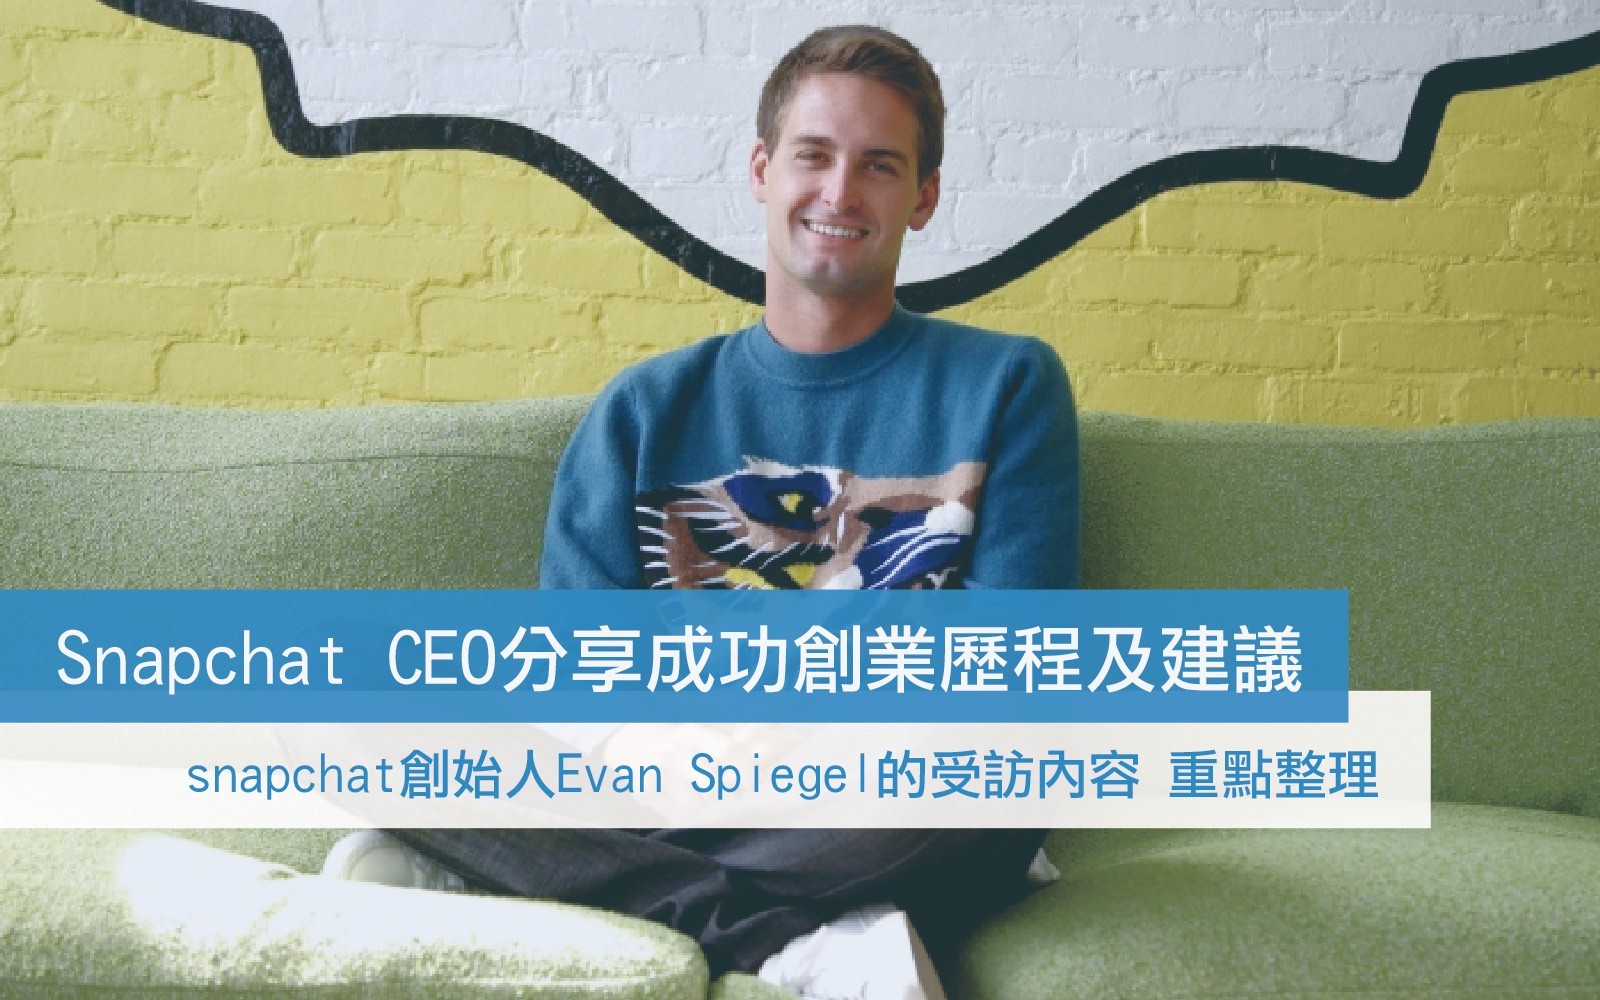 Snapchat CEO 分享成功創業歷程及建議